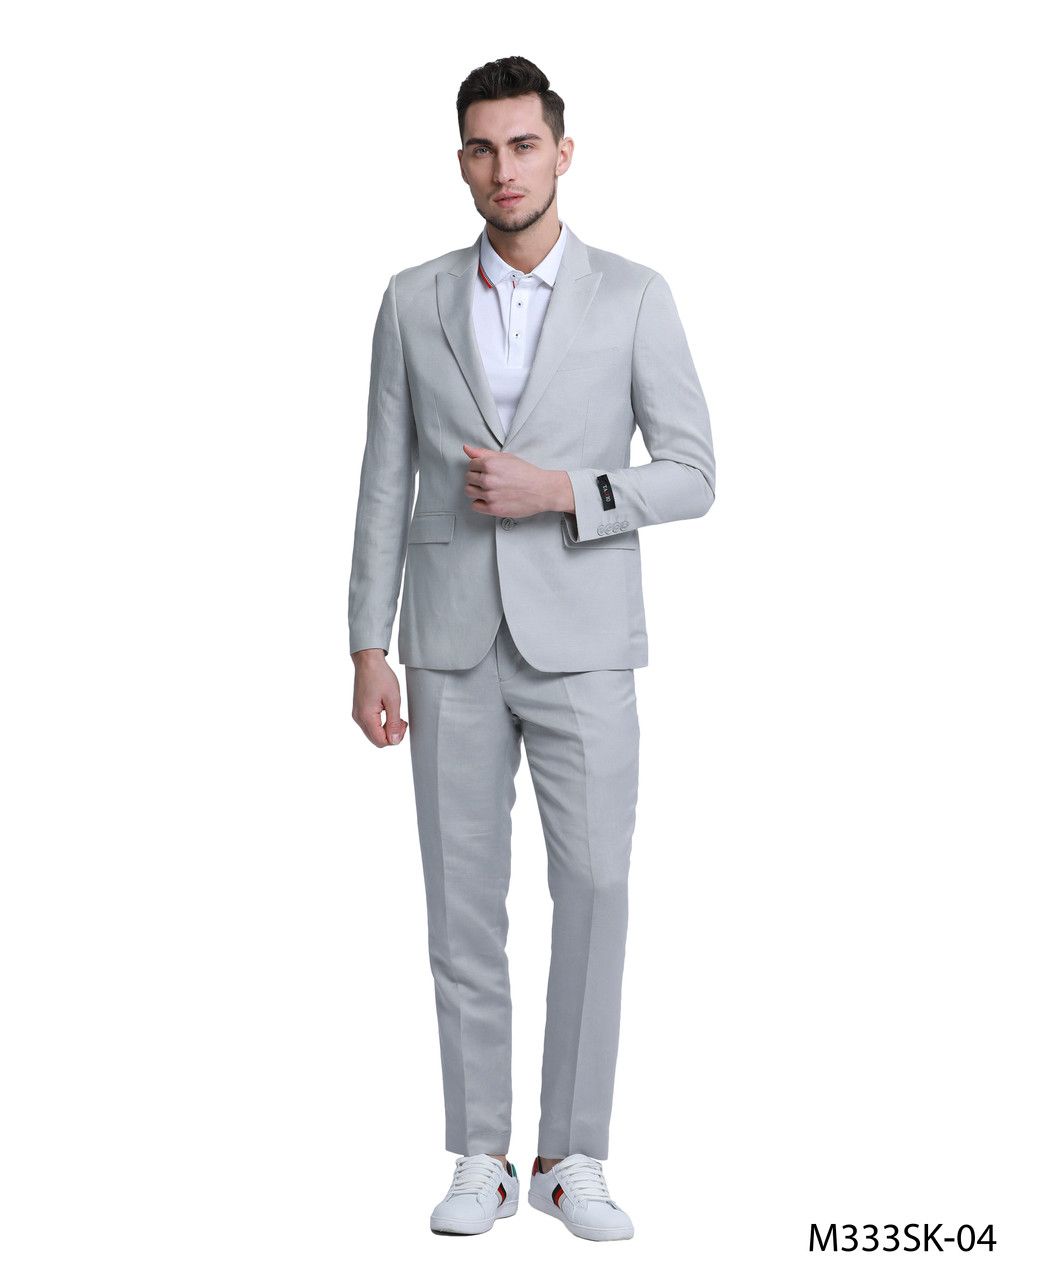 Tazio Men's Slim Fit 2-Piece Suit - Solid Color